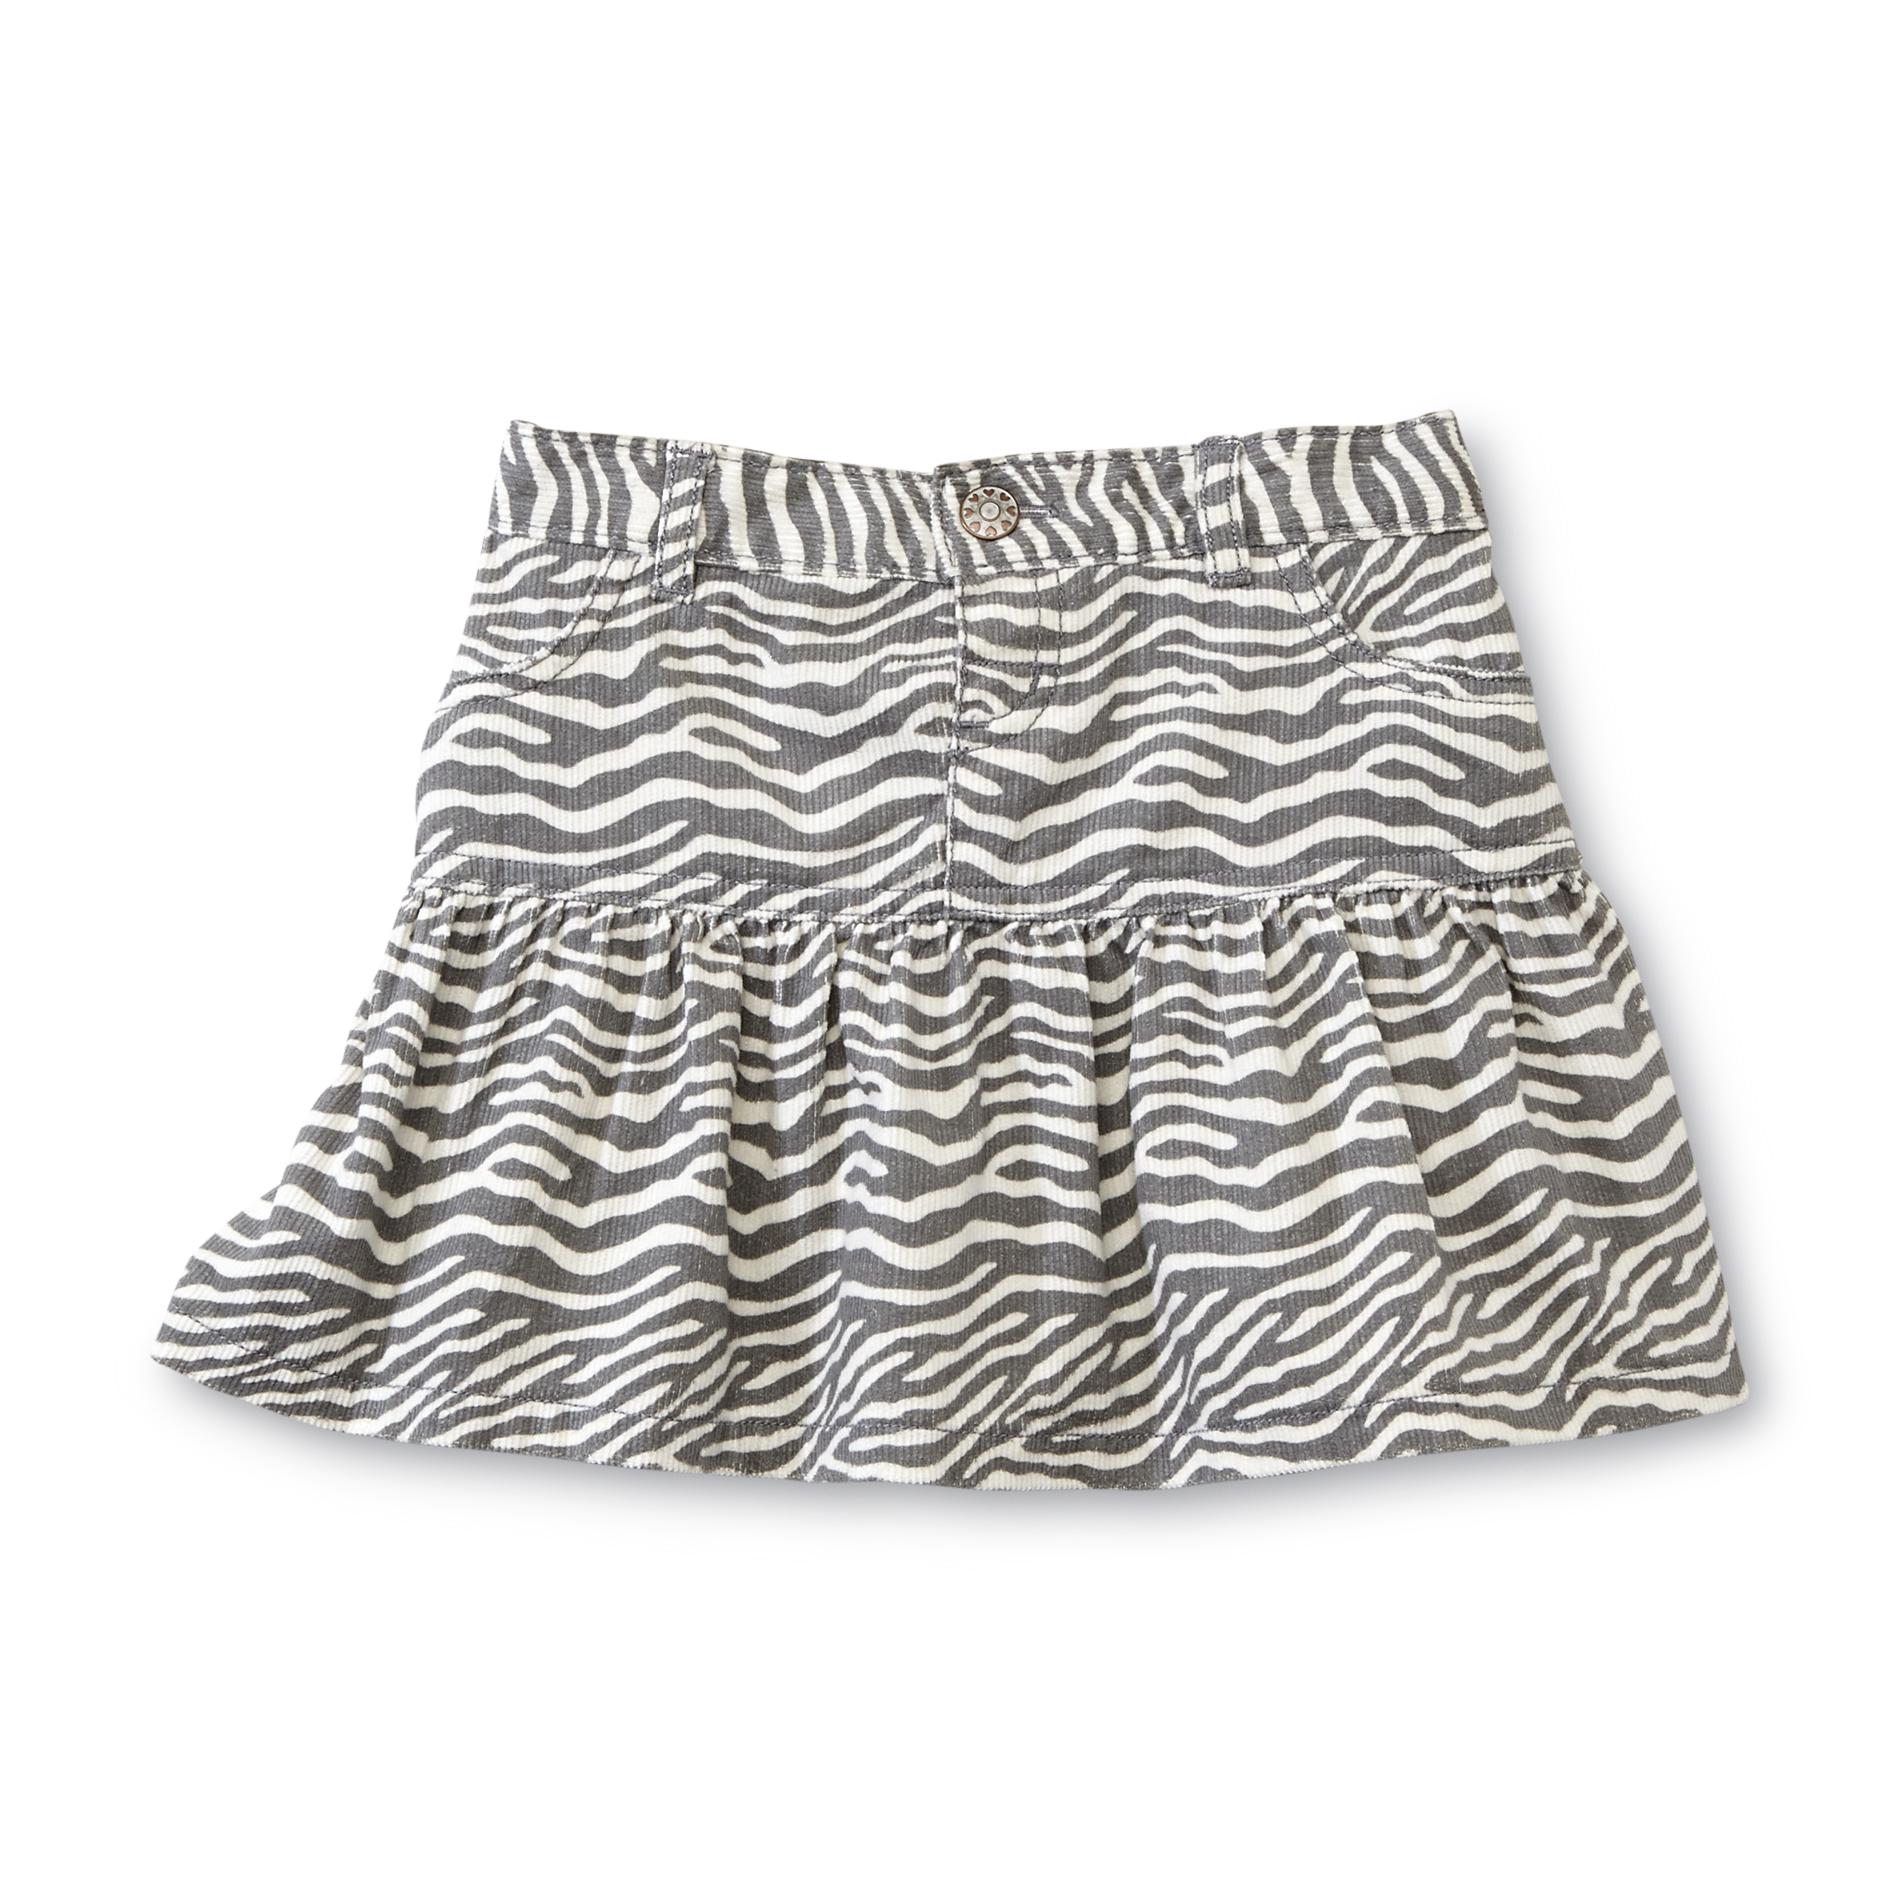 WonderKids Toddler Girl's Corduroy Skirt - Zebra Striped